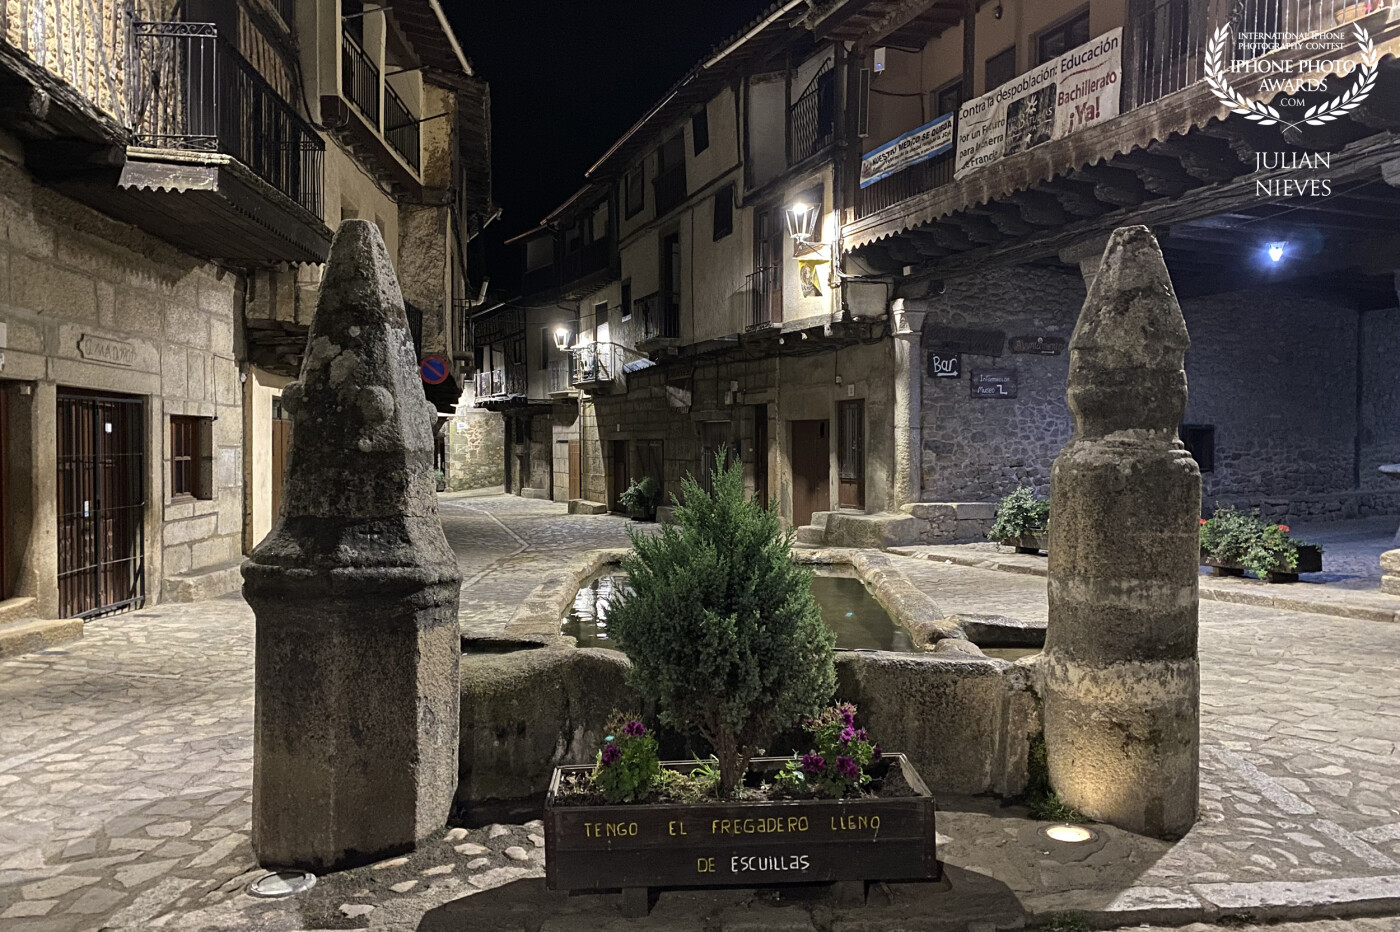 En la sierra de Francia nos encontramos este bello municipio "San Martin del Castañar" de la provincia de Salamanca, su bella arquitectura lo hace todavía más espectacular y poder pasear por sus calles al caer la noche tiene su magia y encanto.